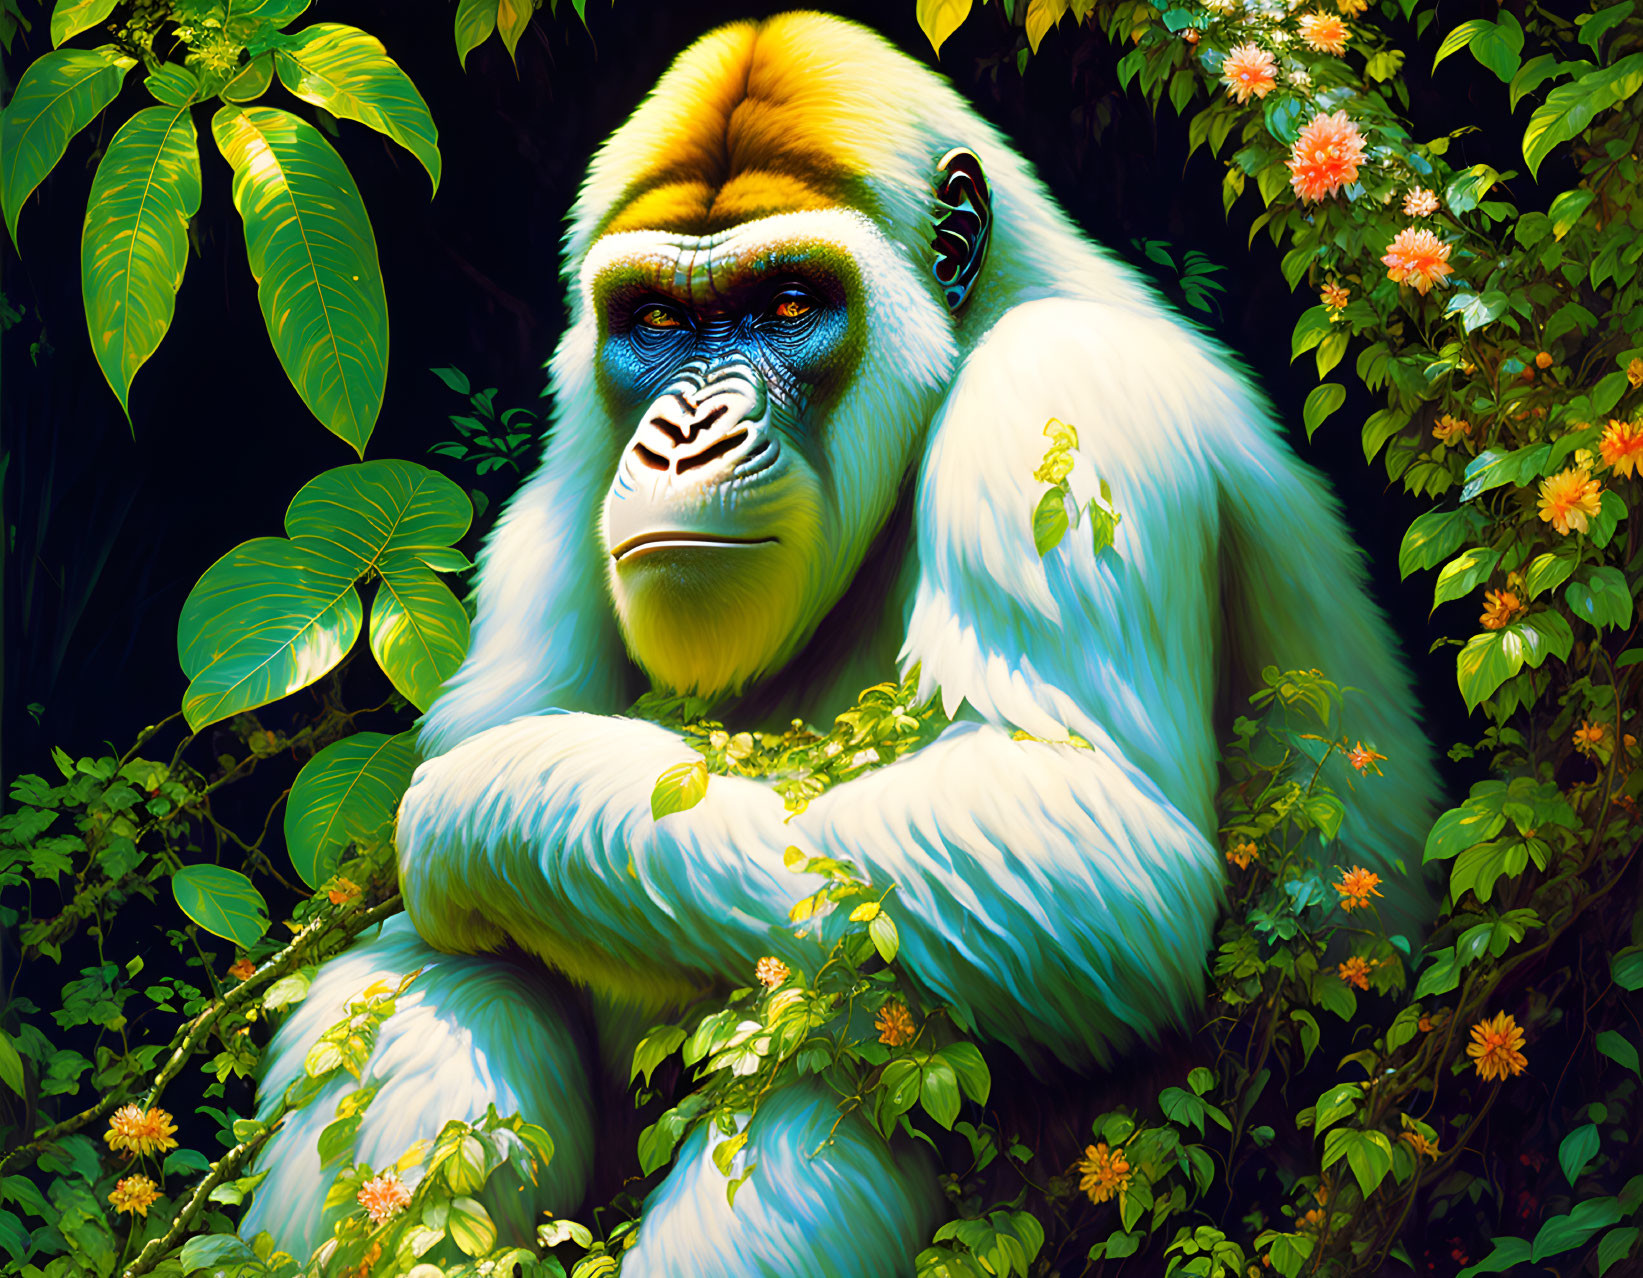 Colorful White Gorilla Illustration in Vibrant Jungle